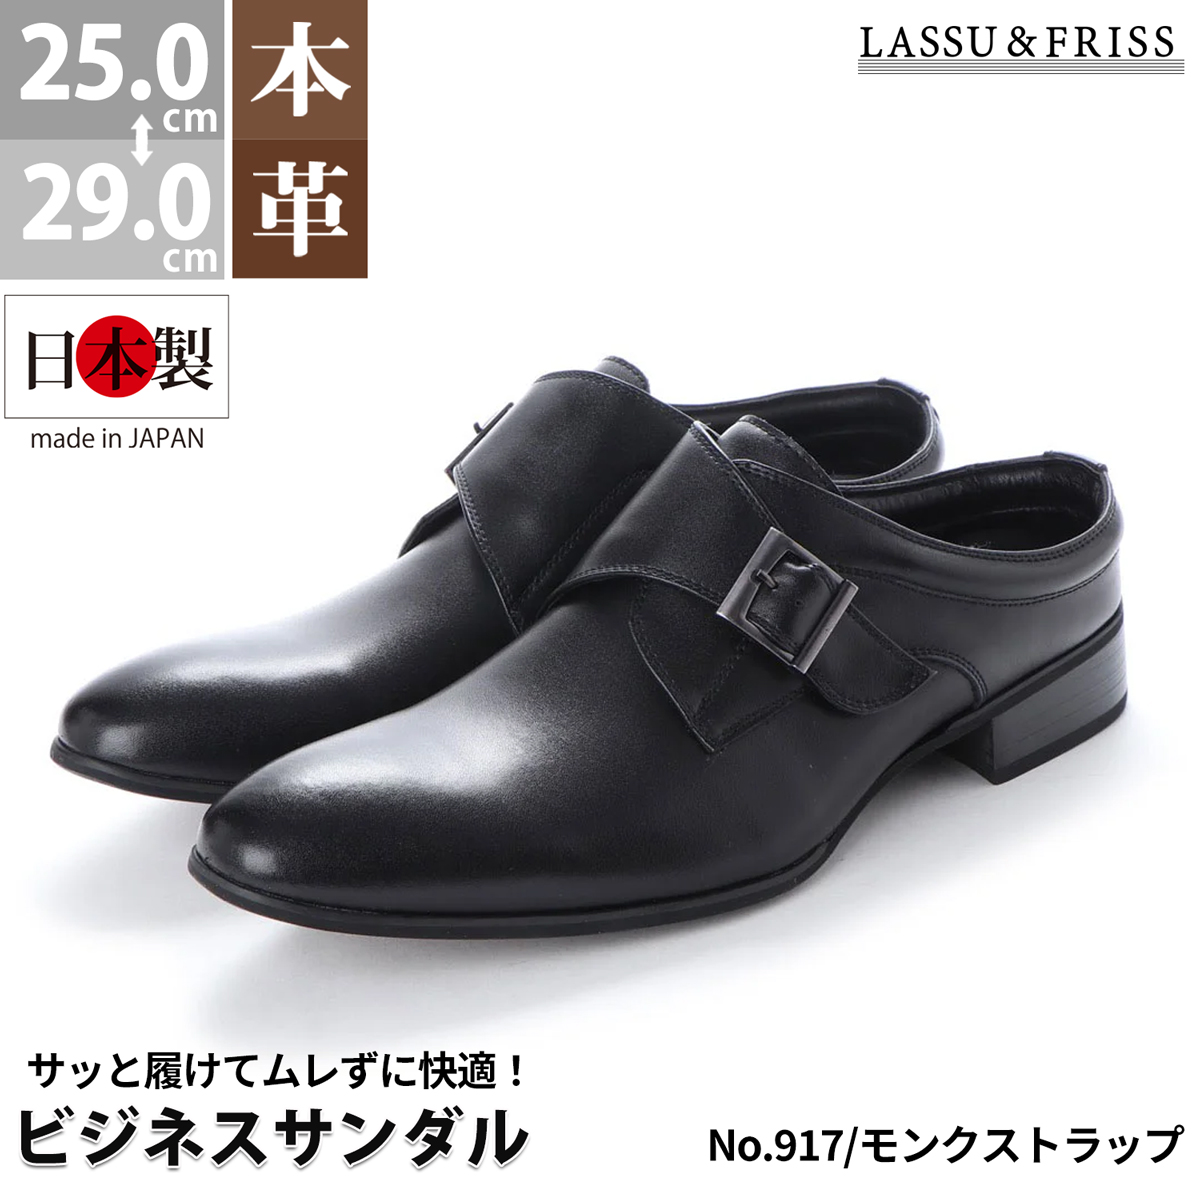 ビジネスシューズ 本革 日本製 通気性 サンダル 革靴 モンクストラップ レザー 紳士 会社 かかとなし 25-29cm No.917